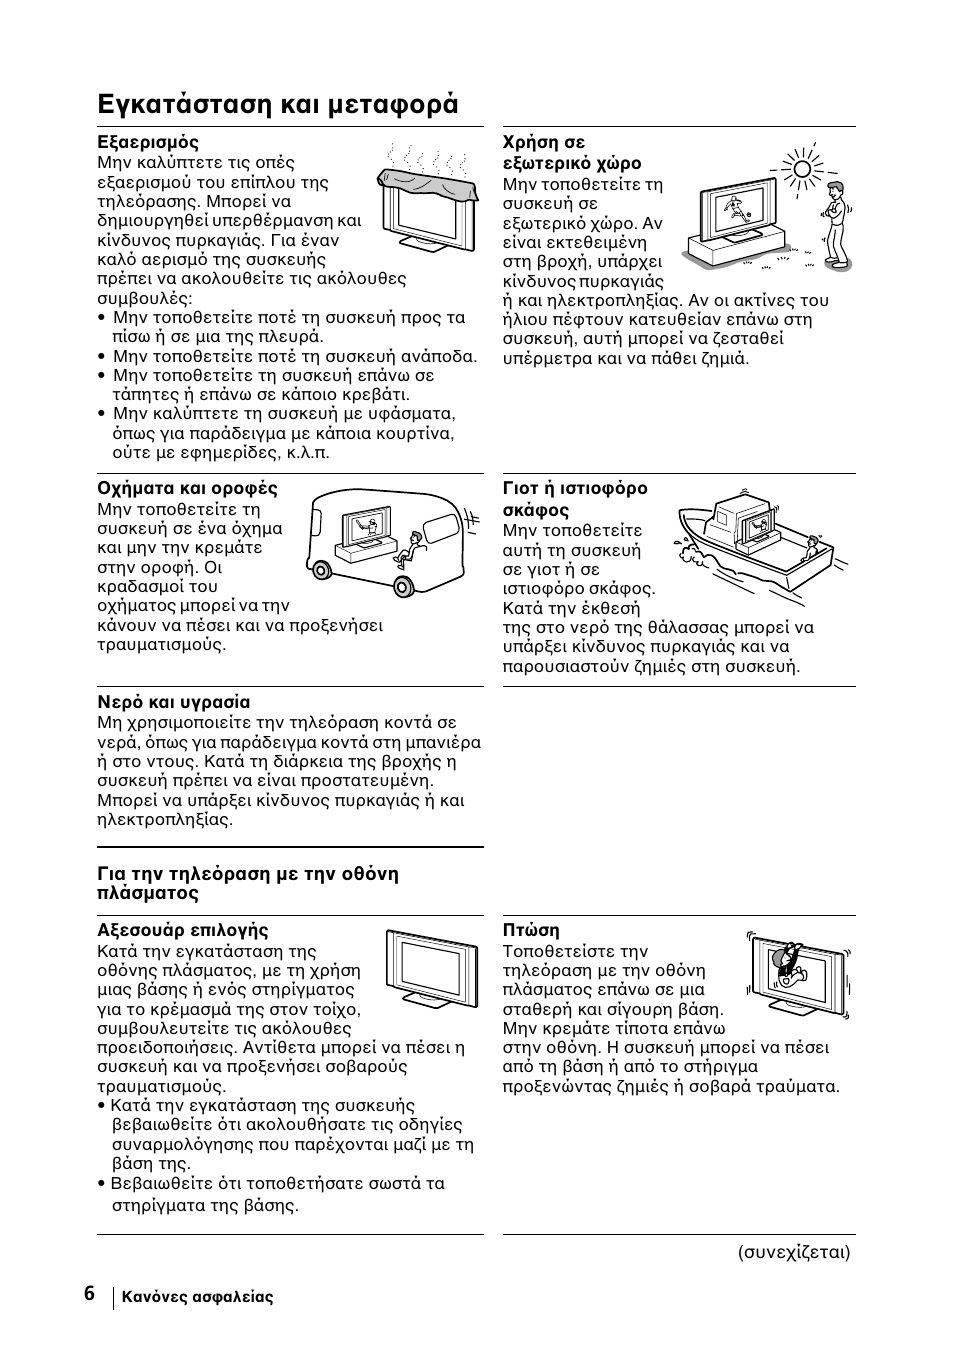 Εγκατάσταση και µεταφορά | Sony KE-42MR1 Manuale d'uso | Pagina 232 / 302